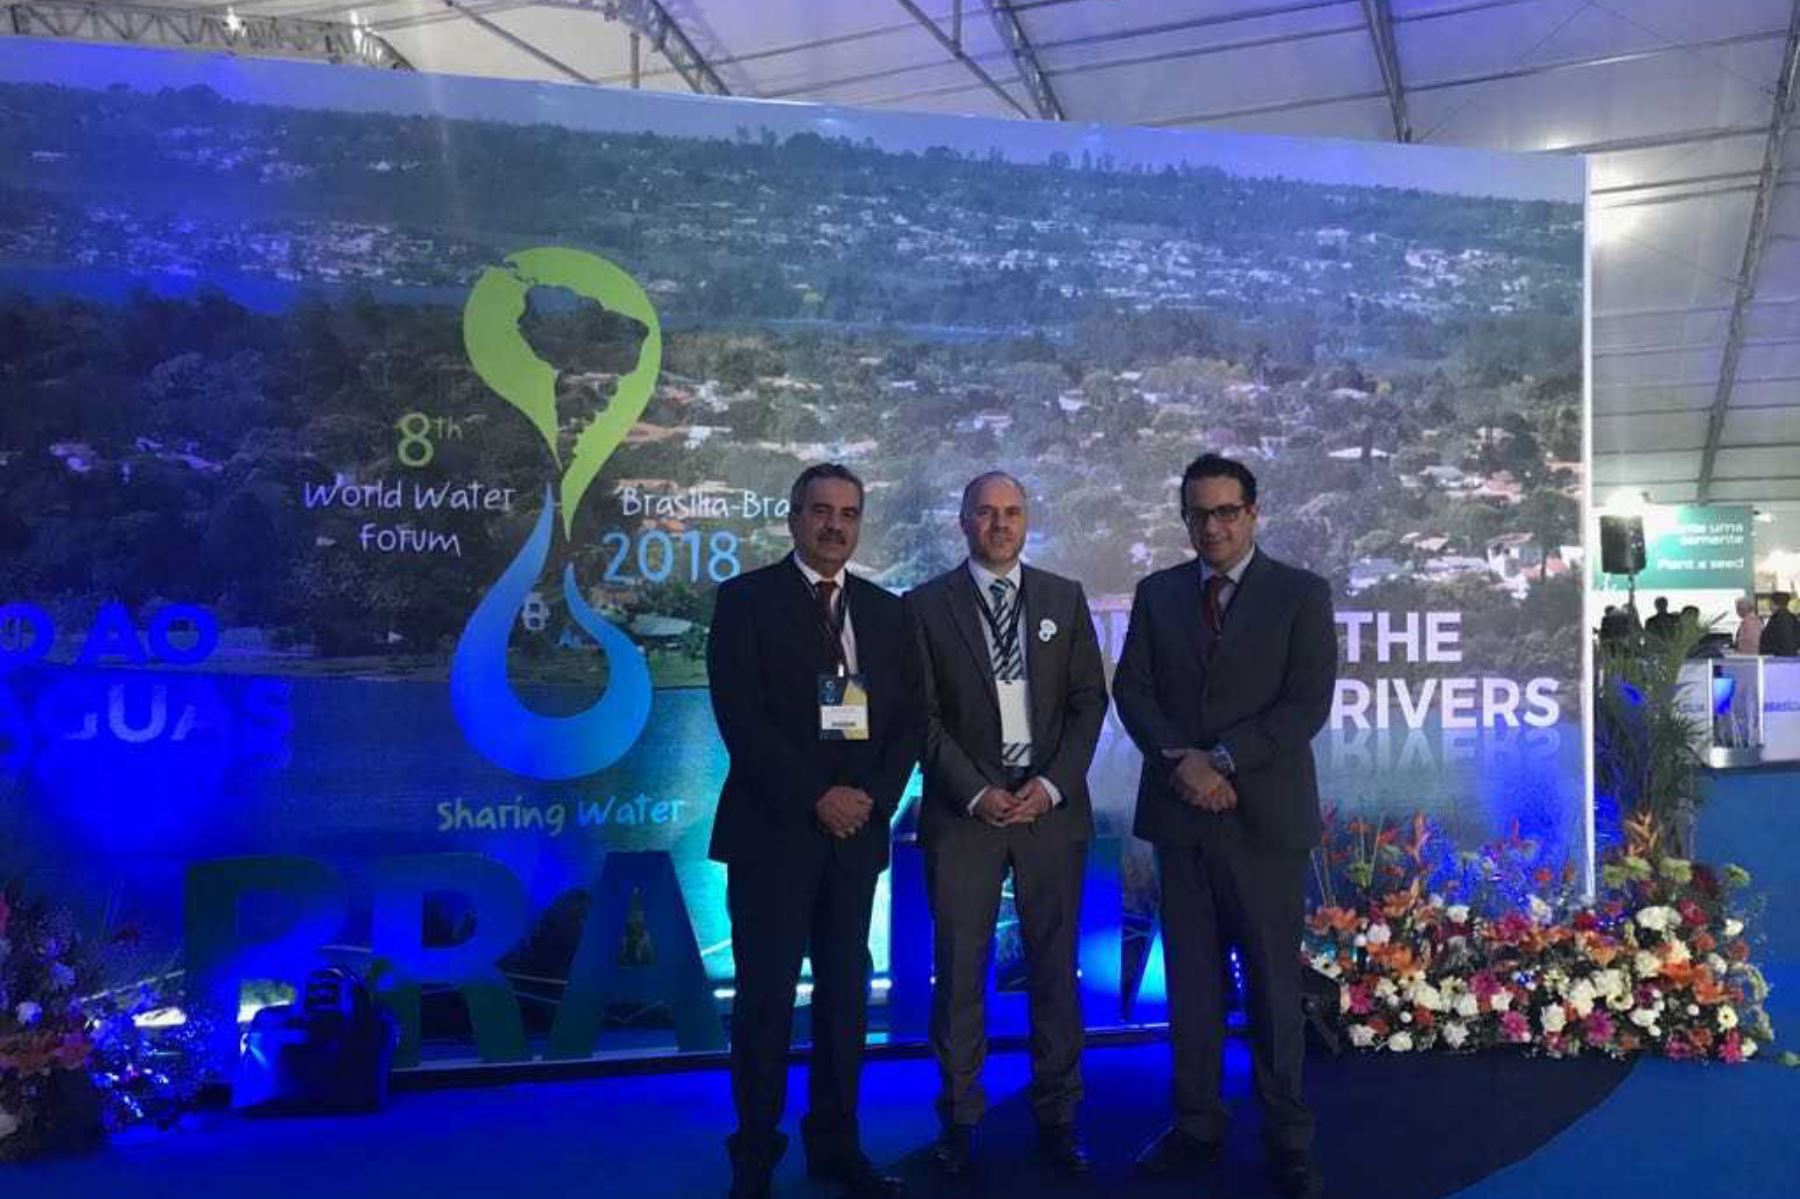 El viceministro de Construcción y Saneamiento, Fernando Laca Barrera, destacó en el Foro Mundial del Agua las acciones que realiza el Gobierno peruano para preservar el agua y asegurar este recurso a la población en el futuro.